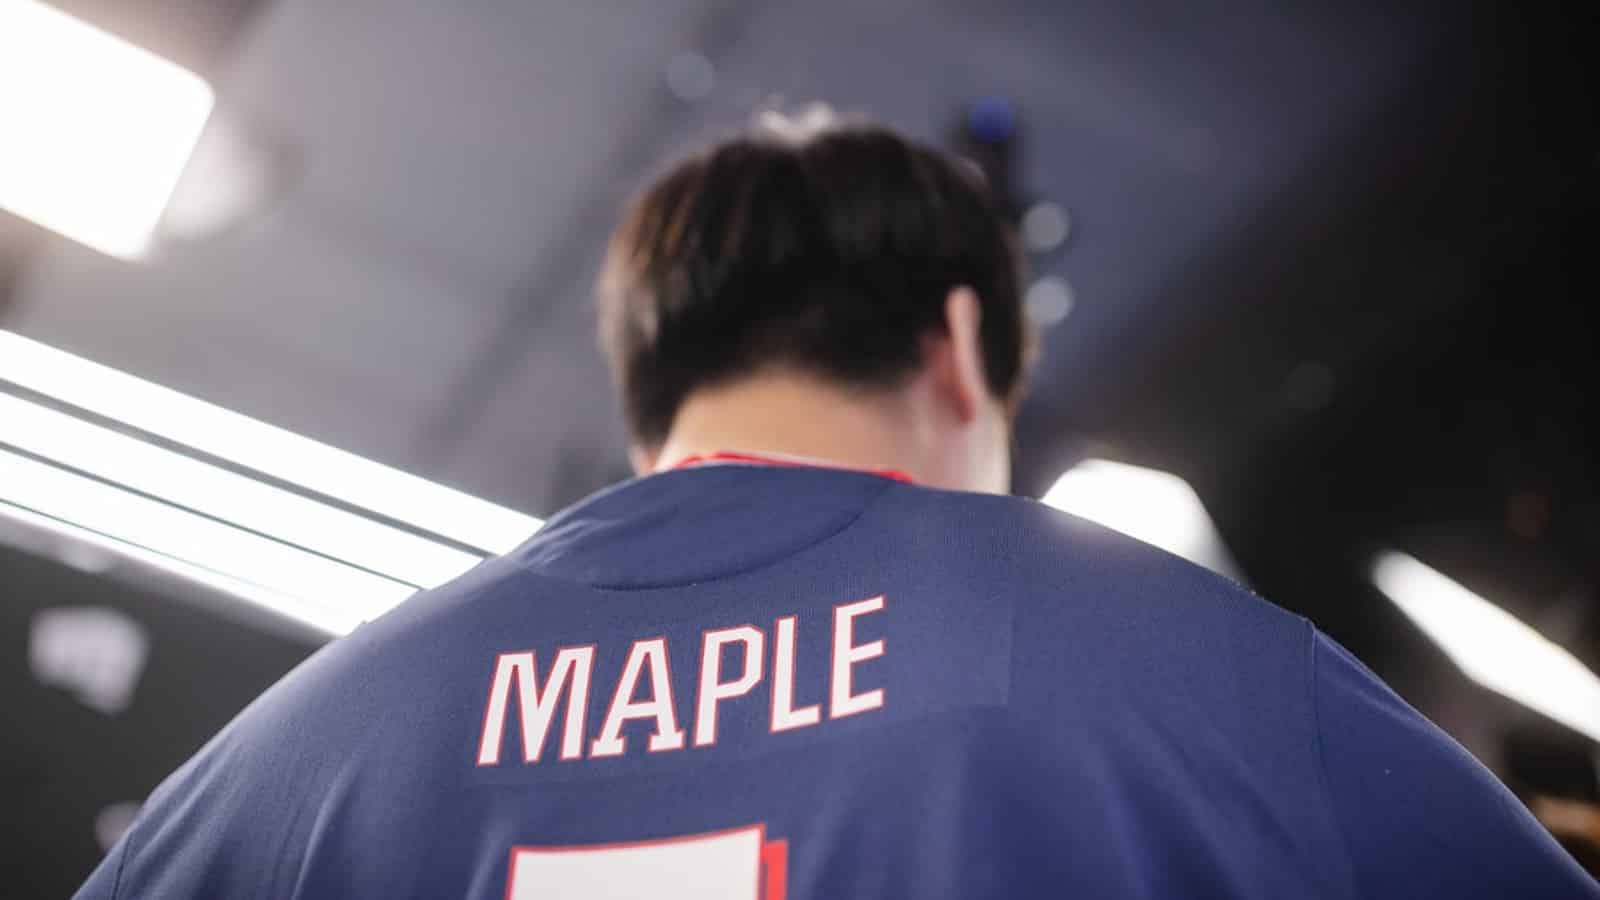 Maple as a League pro.